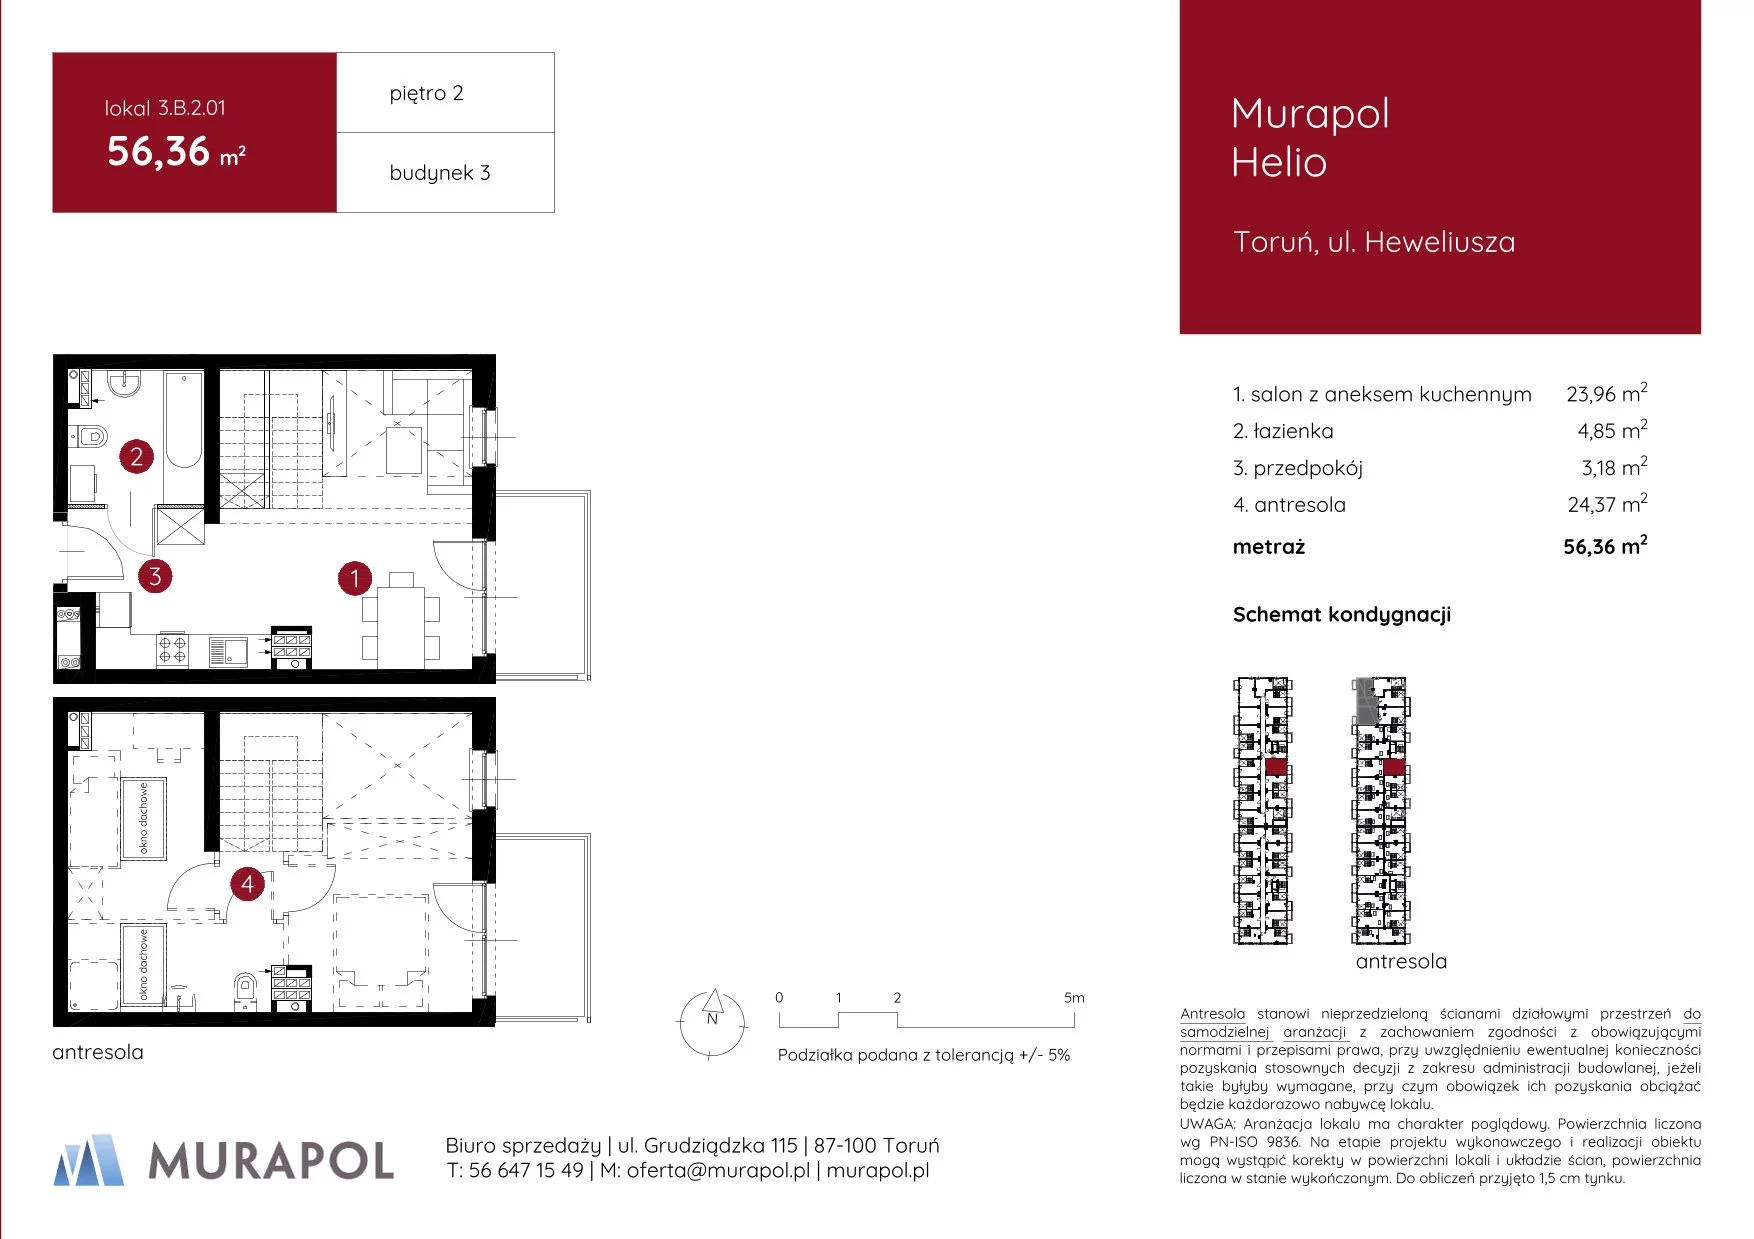 Mieszkanie 56,36 m², piętro 2, oferta nr 3.B.2.01, Murapol Helio, Toruń, Wrzosy, JAR, ul. Heweliusza